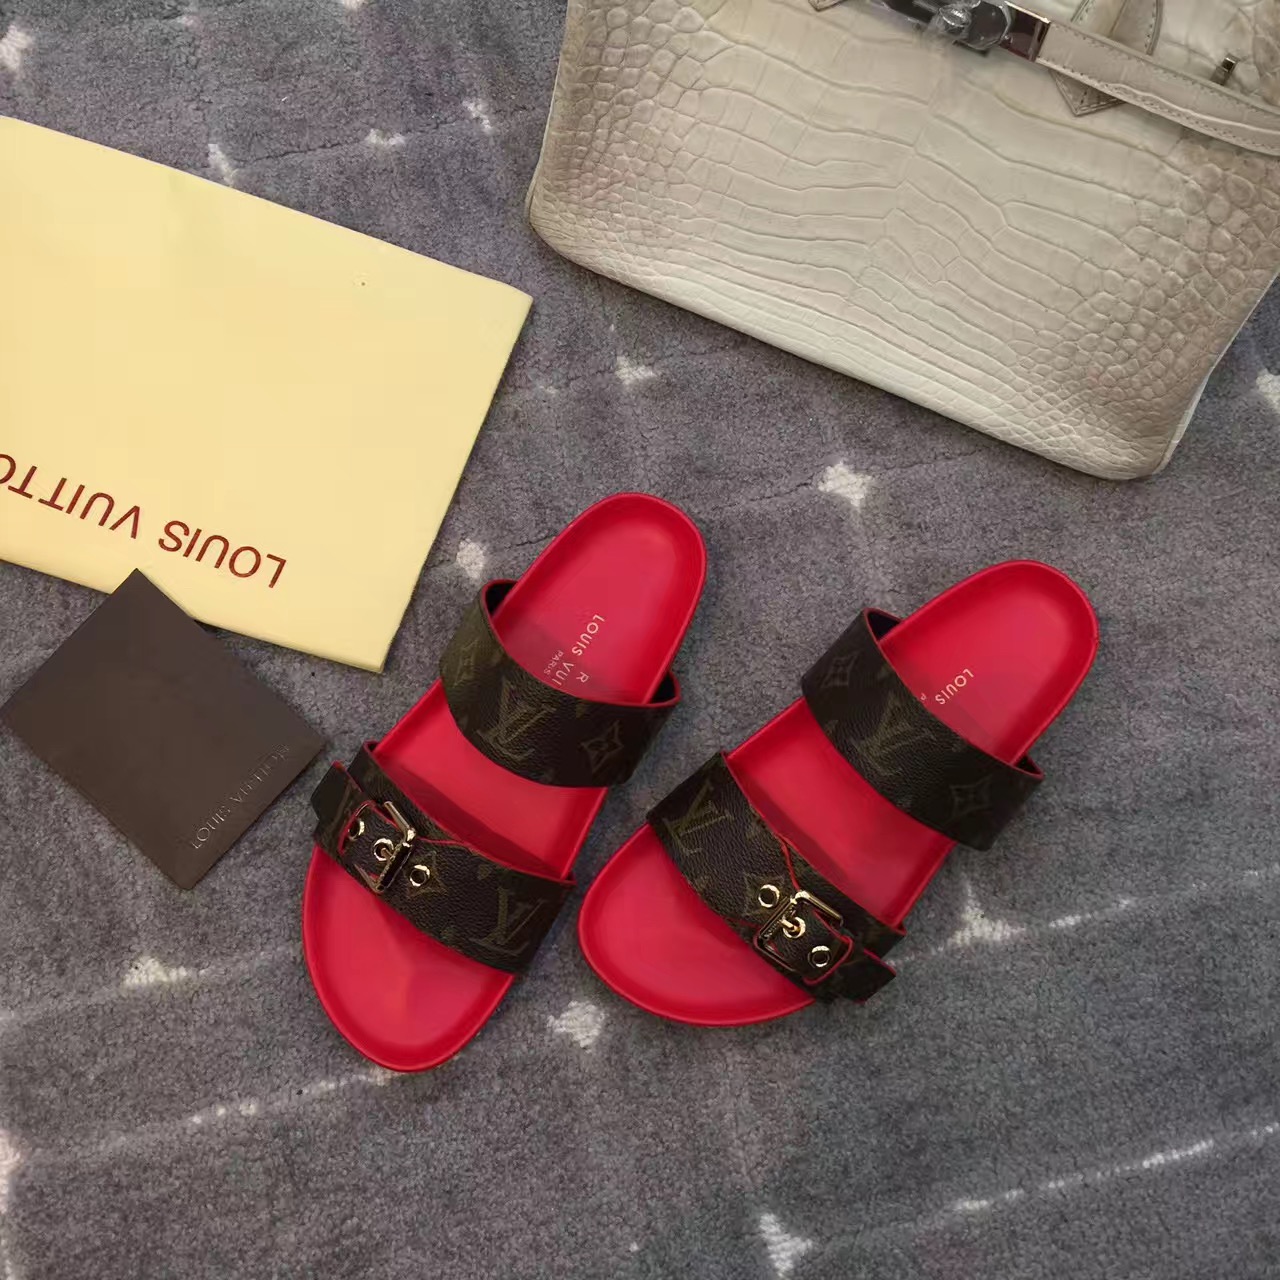 Louis Vuitton Sunbath Flat Mule Sandals Review 